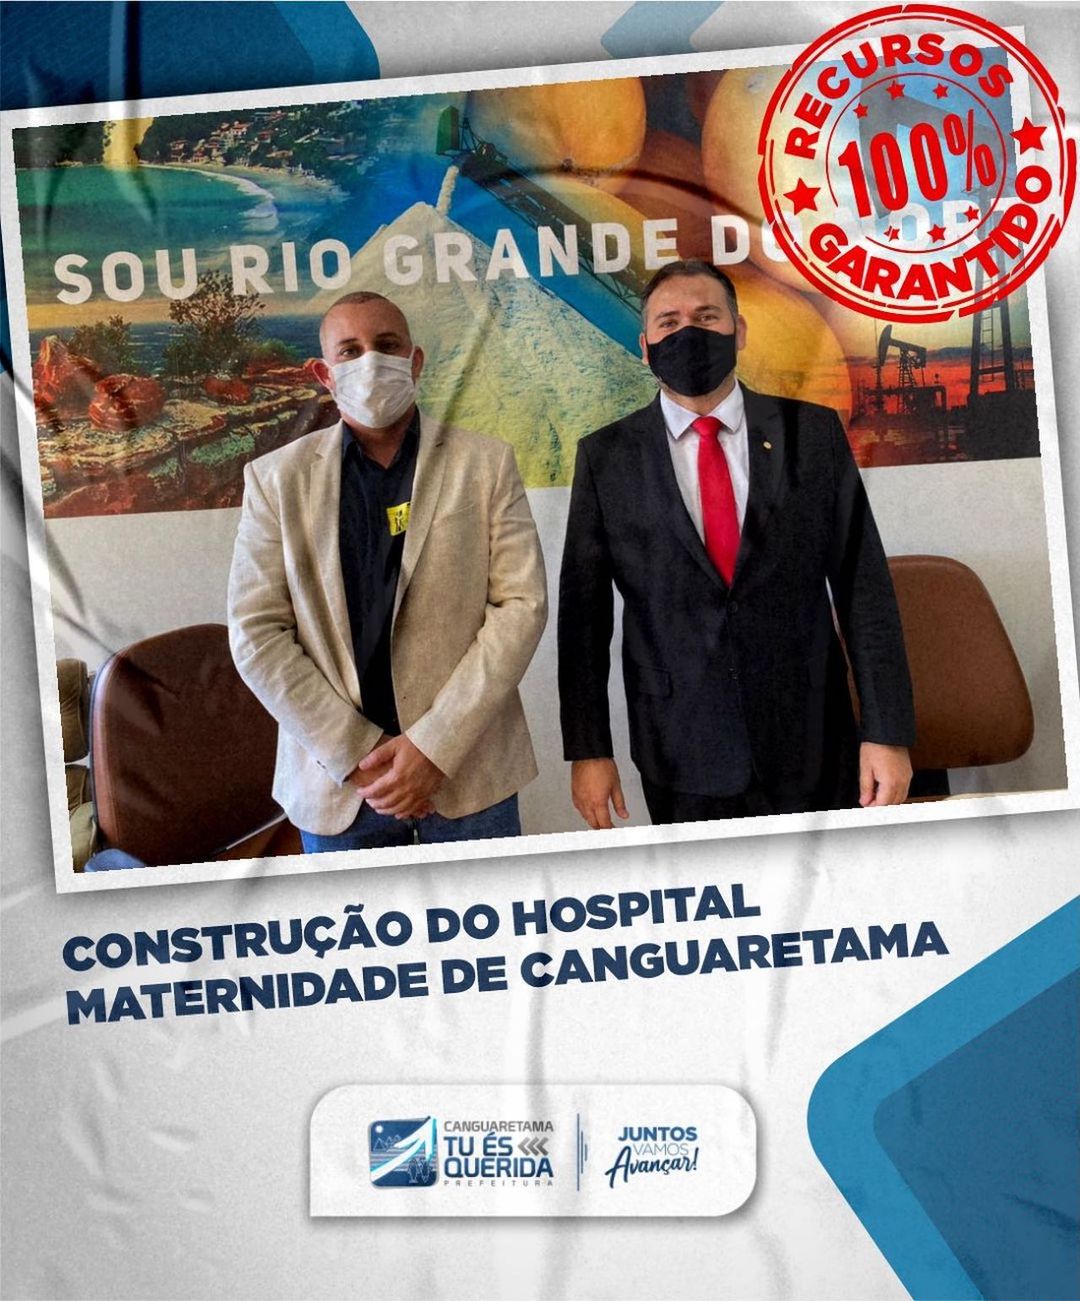 Em Brasília, Wellinson busca recursos para construção do hospital